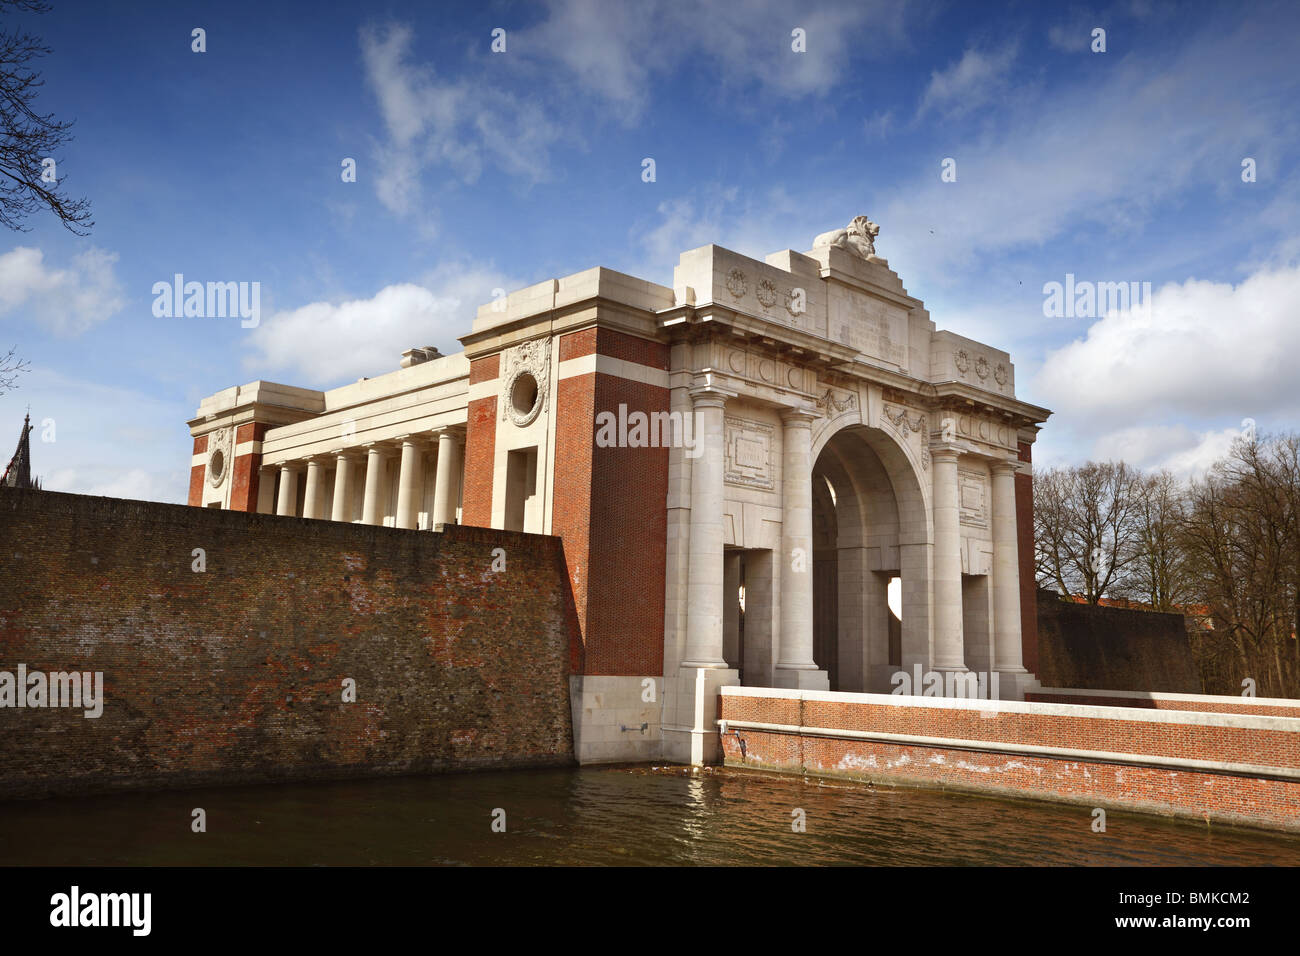 Menin Gate Memorial, Ieper (Ypres)